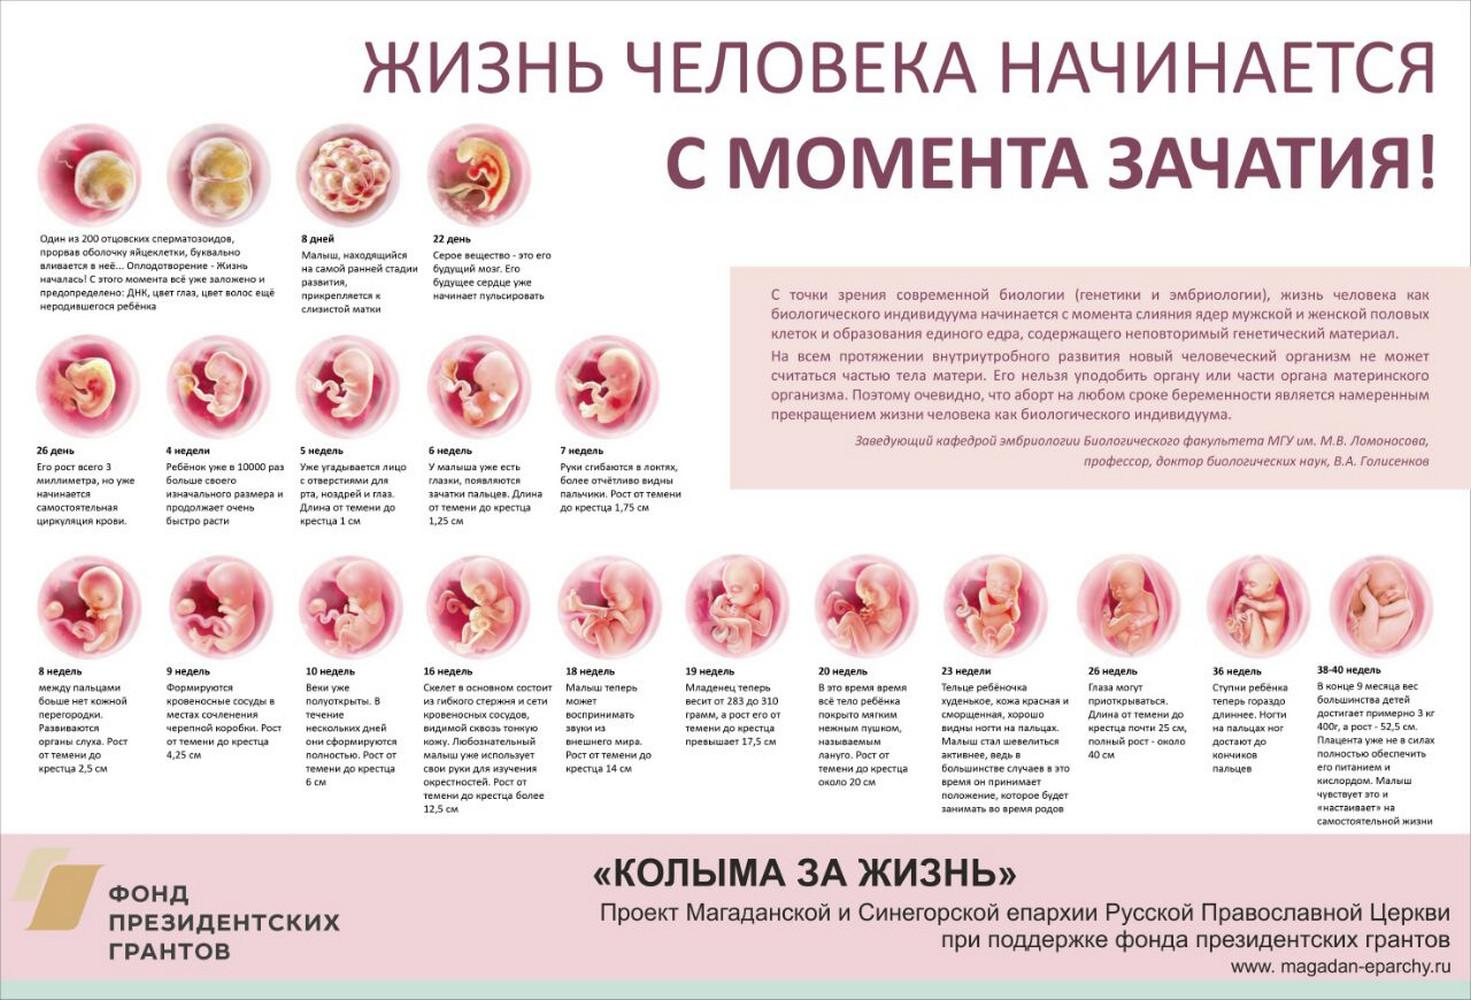 Развитие ребёнка в утробе матери | sherbakova.com